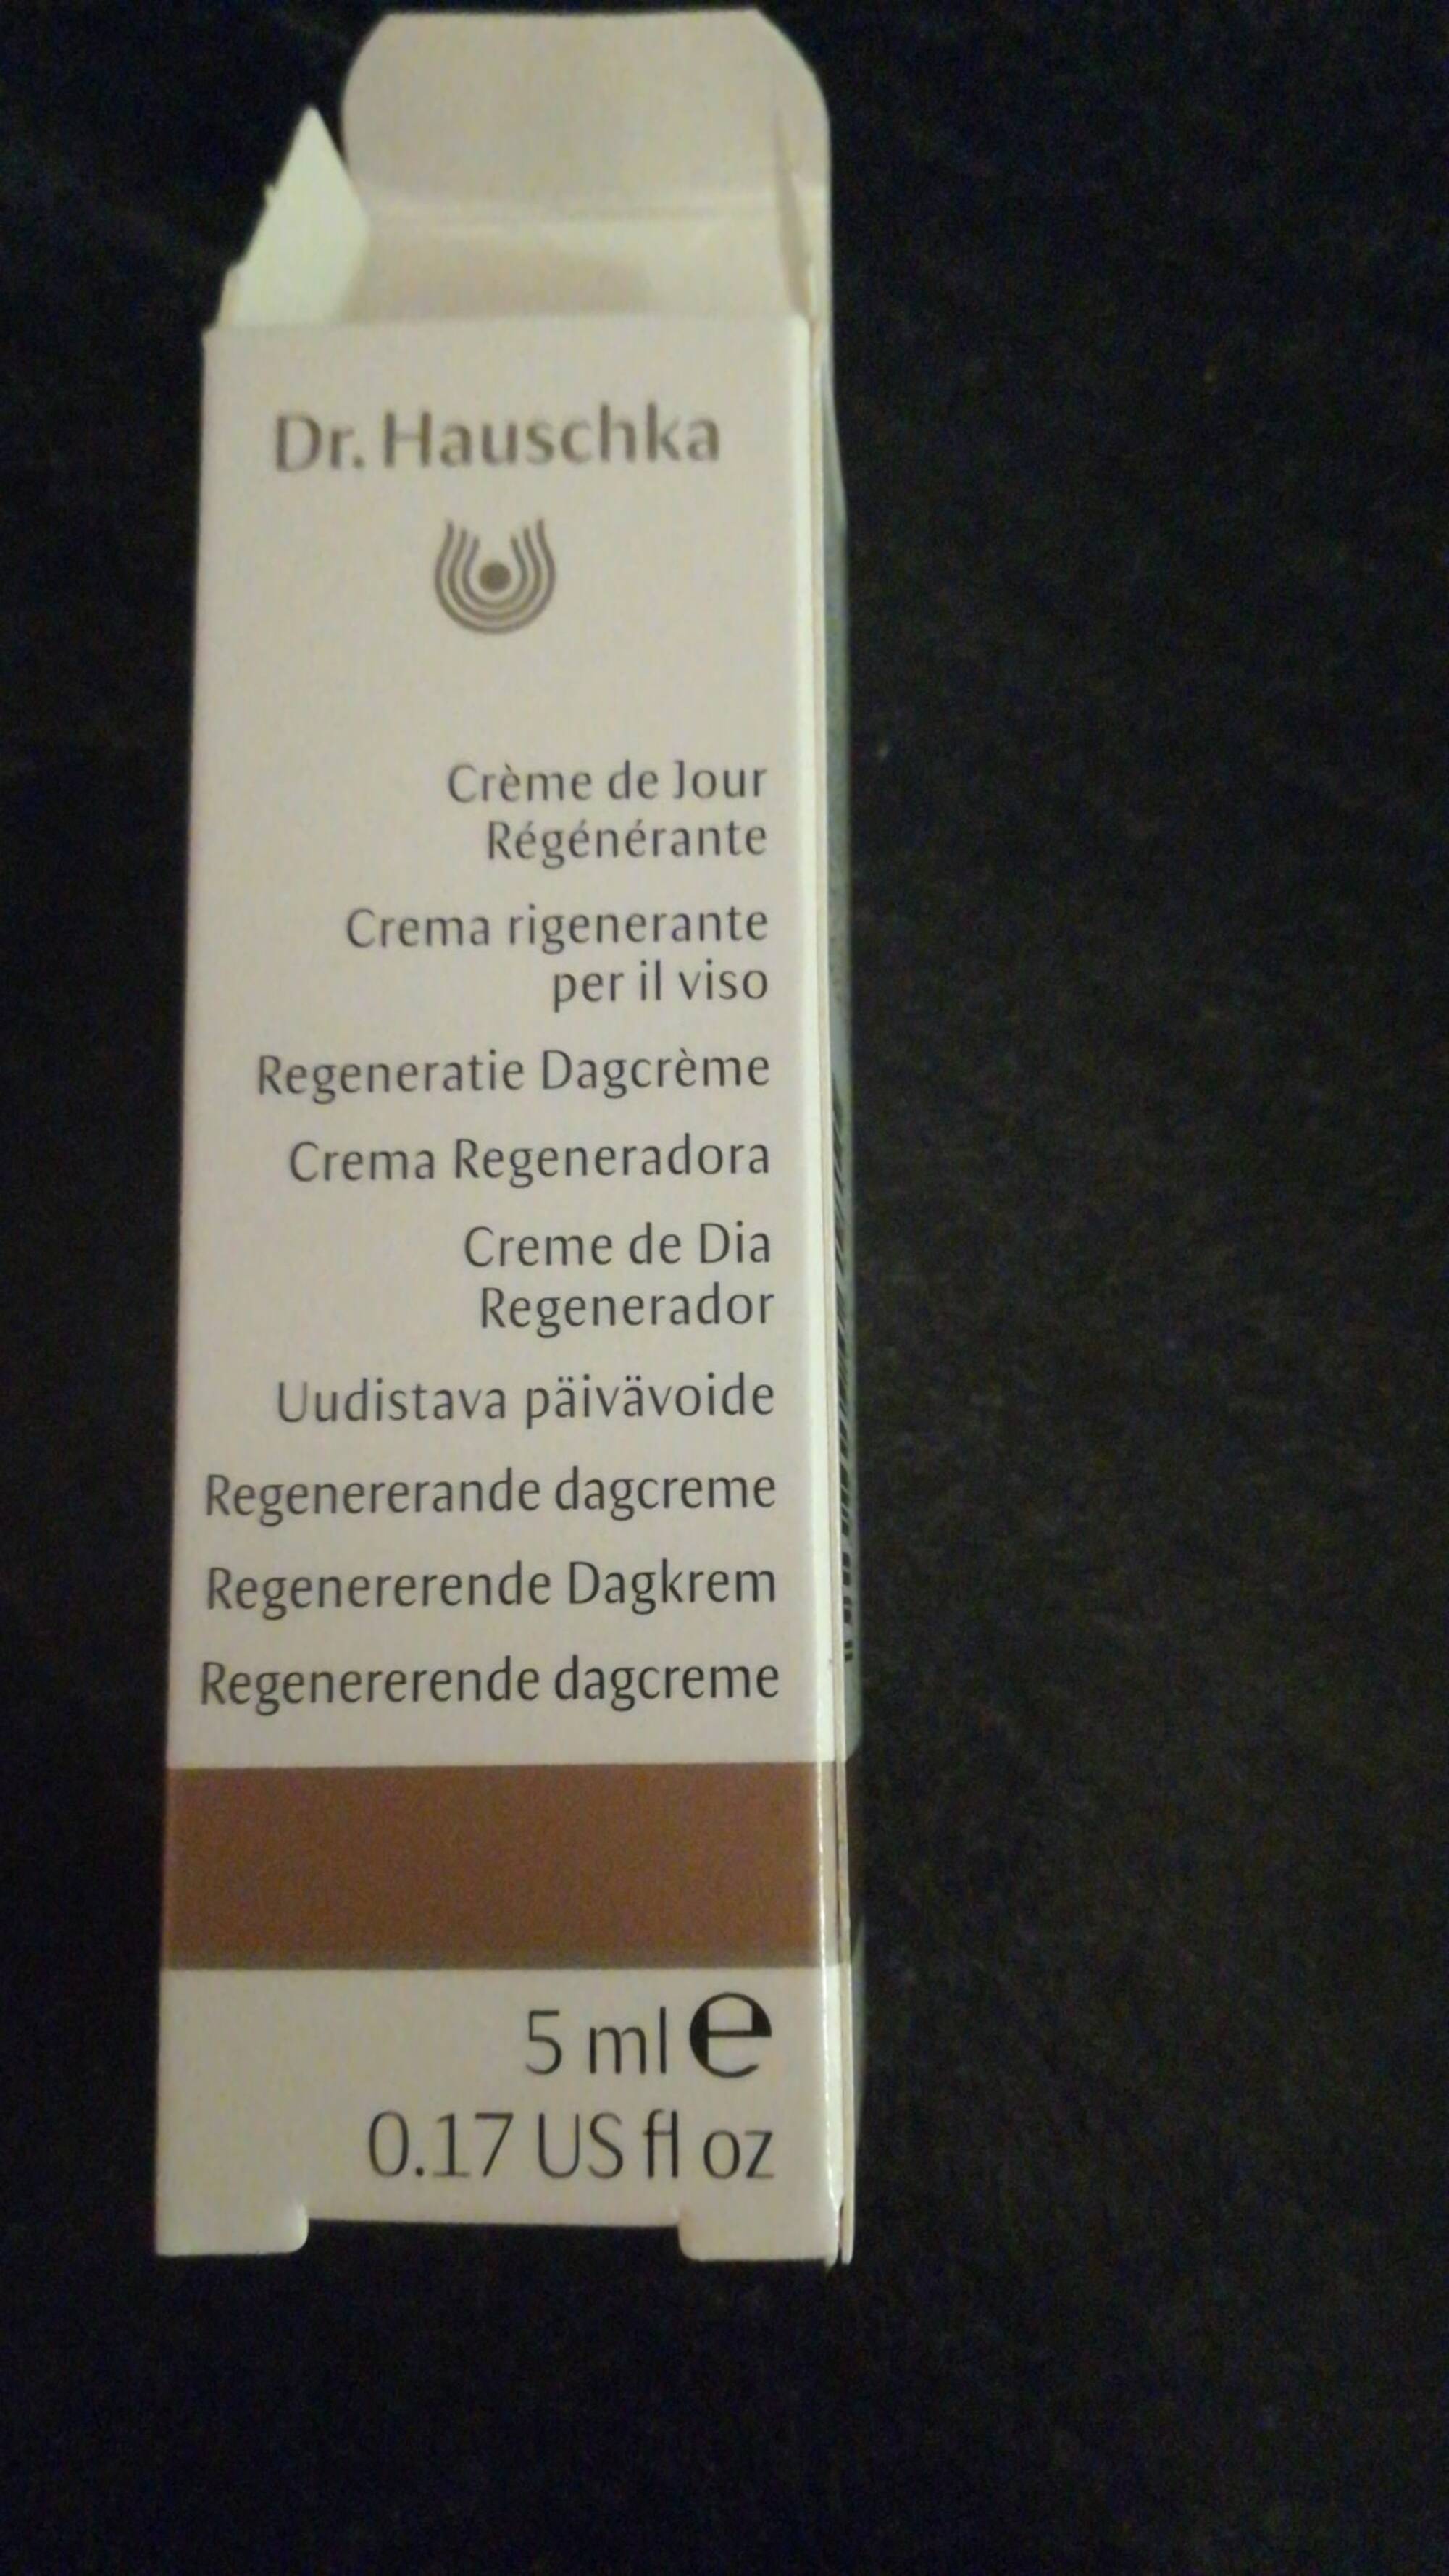 DR. HAUSCHKA - Crème de jour régénérante